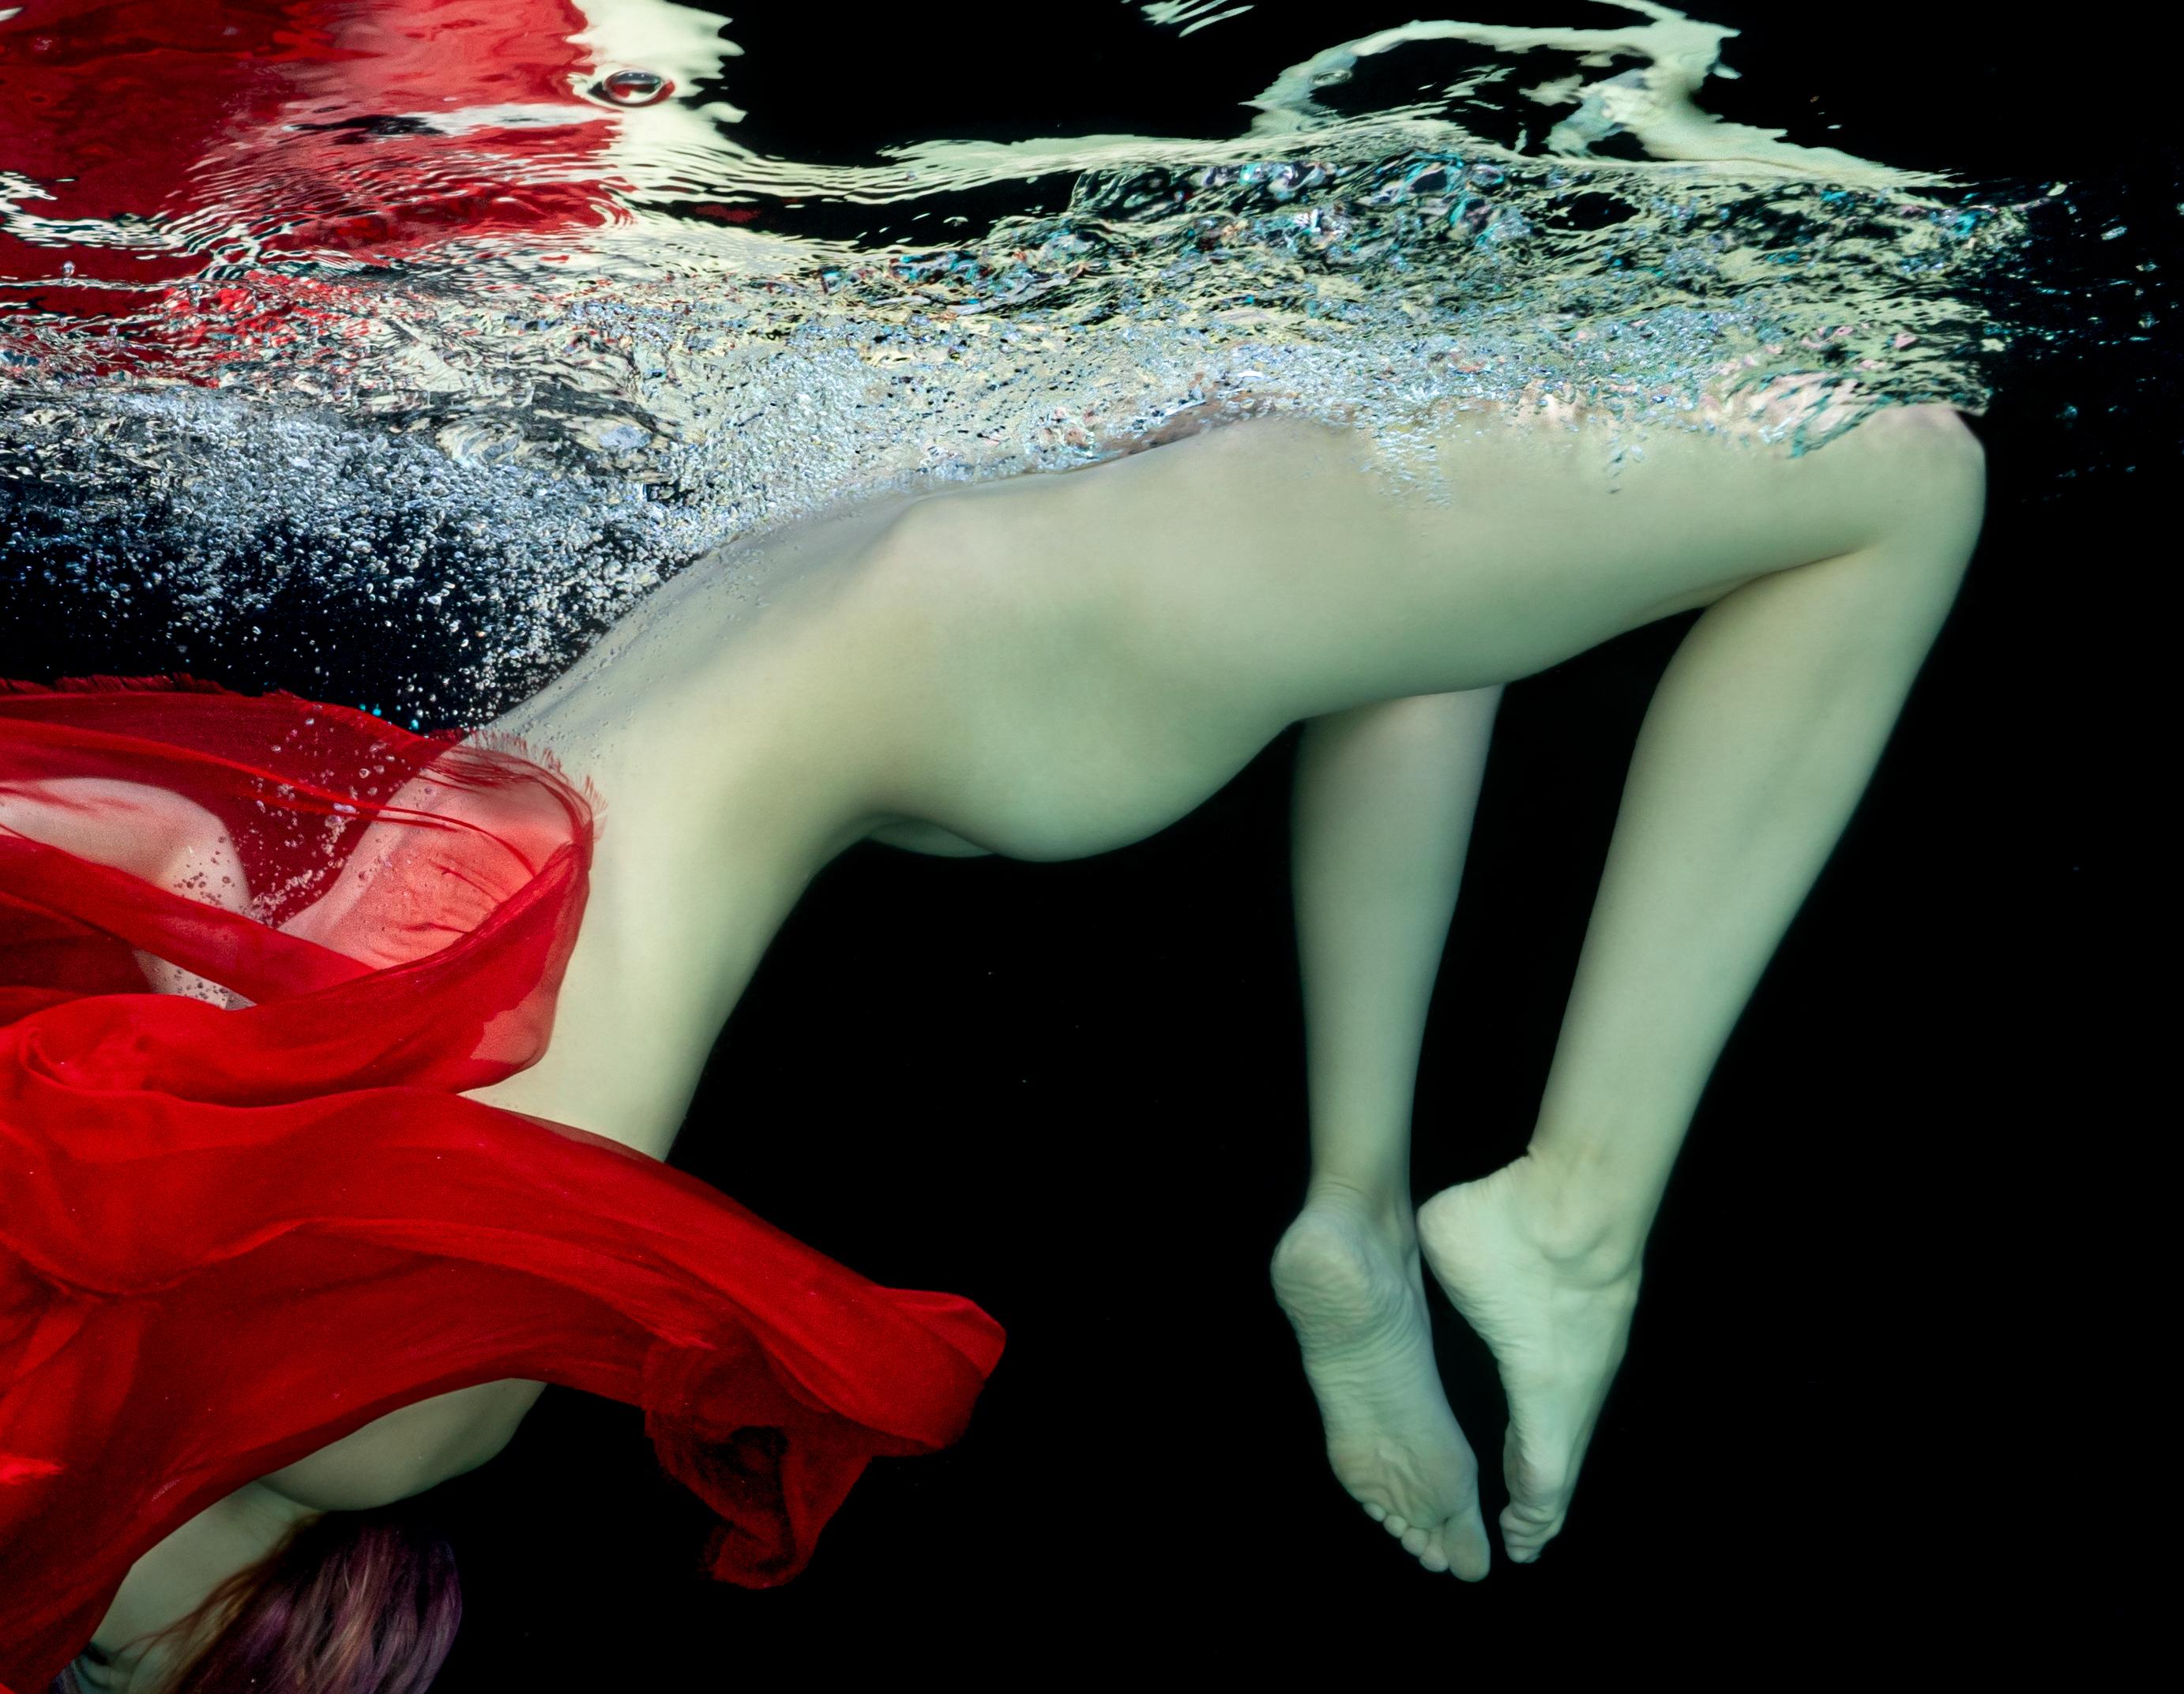 Unterwasseraufnahme einer jungen nackten Frau beim Tauchen in einem Pool. Ihr Gesicht ist mit einem roten Schal bedeckt. Ihr schöner nackter Körper und der rote Schal sehen frisch und lebendig aus  auf schwarzem Hintergrund.

Originalabzug in